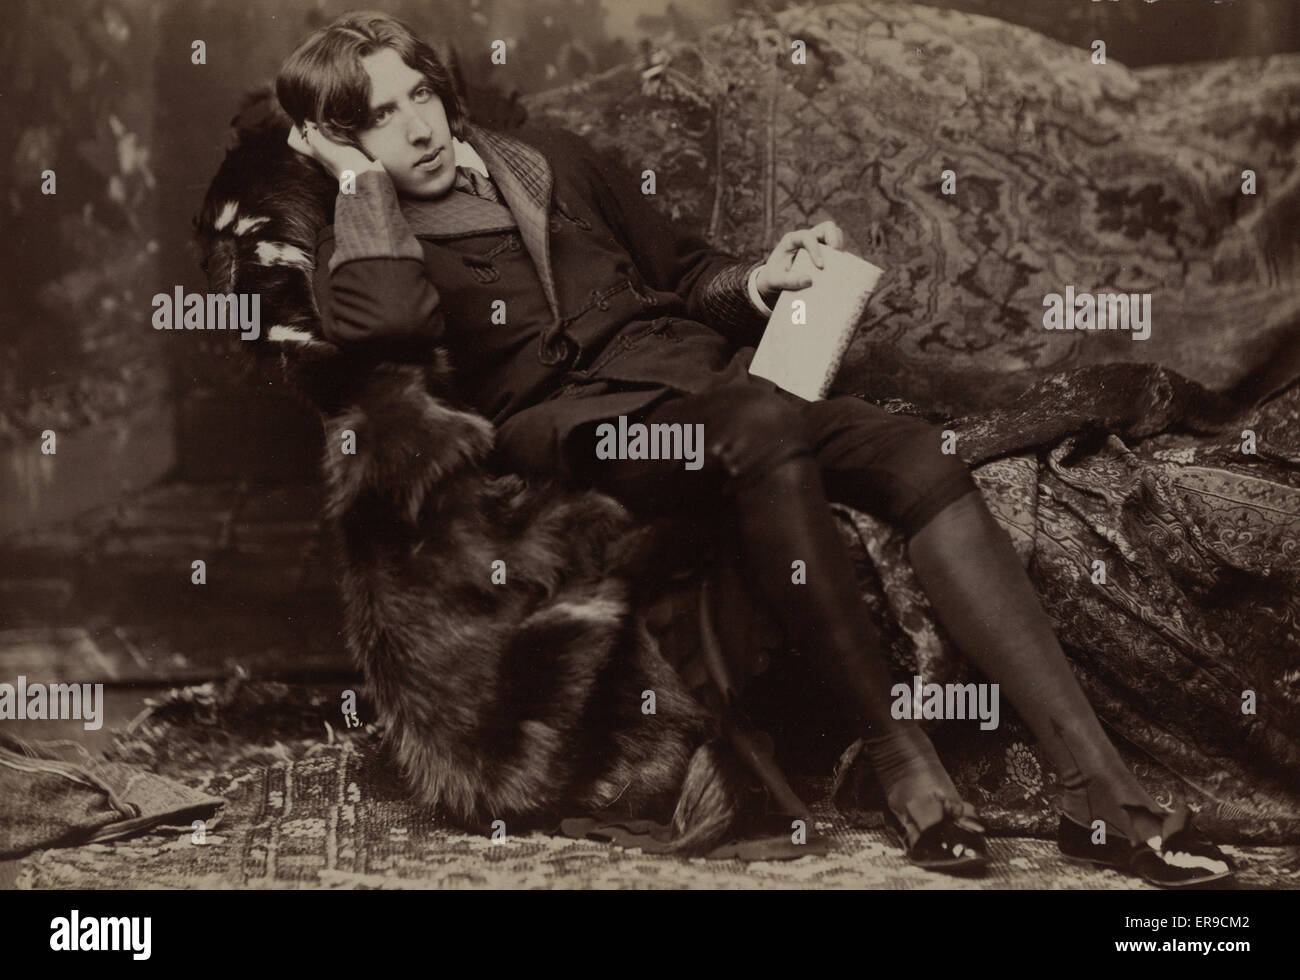 Oscar Wilde. Oscar Wilde, Porträt, nach rechts, im Stuhl sitzen, Rechte Hand auf die Wange, linke Hand Buch hält. Datum c1882. Stockfoto